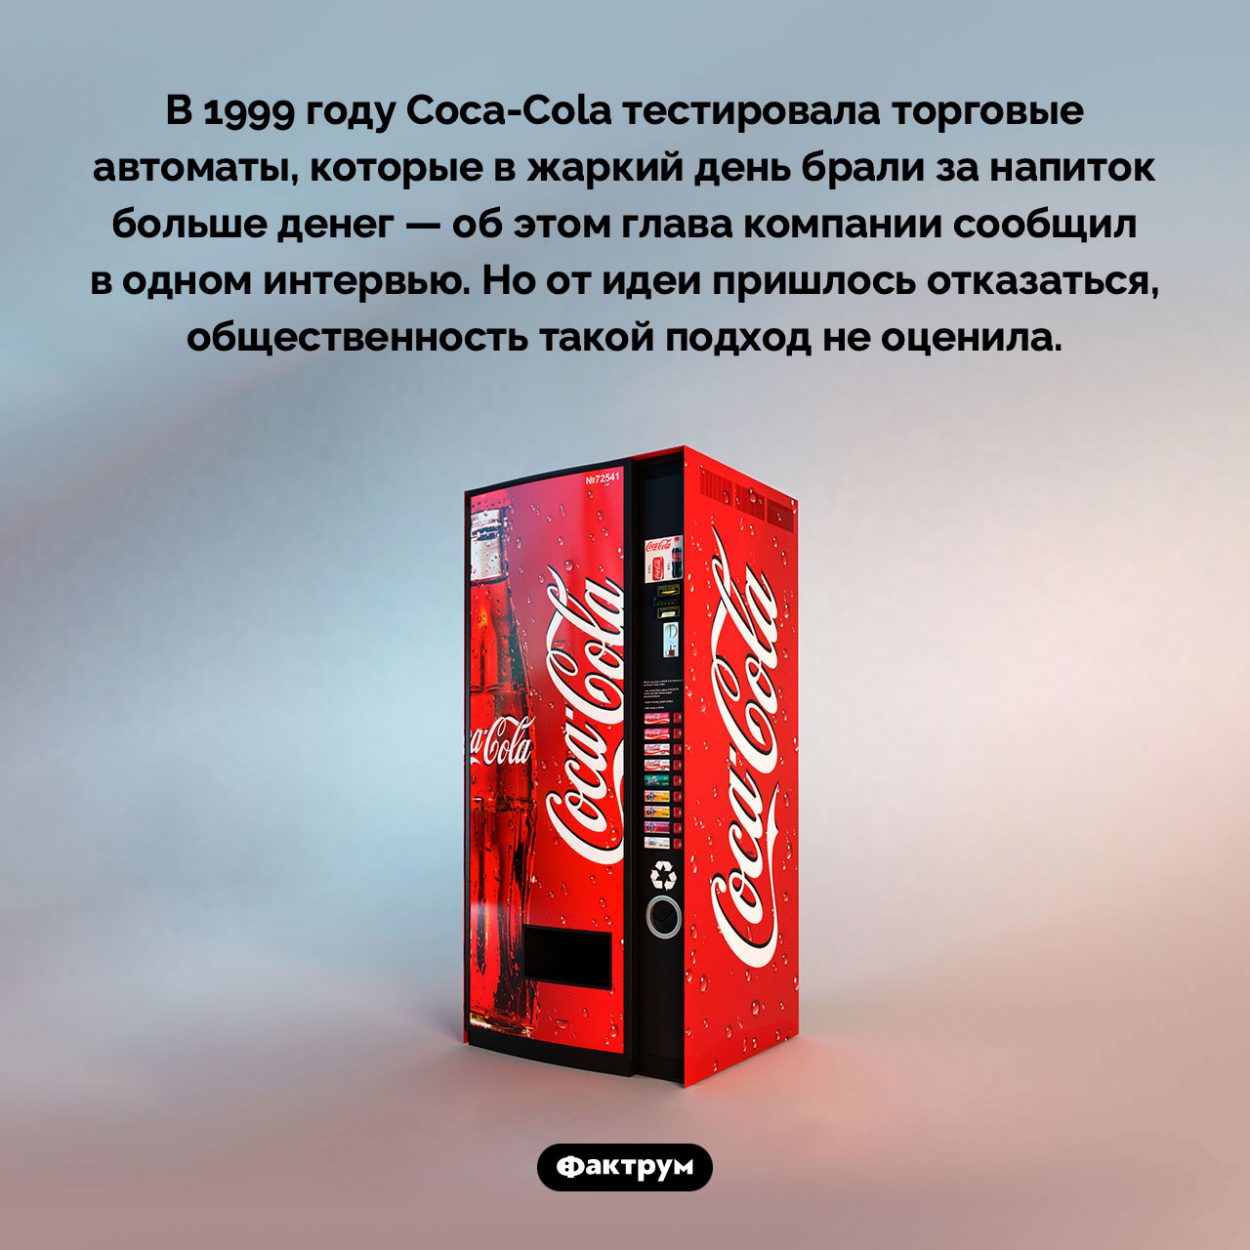 Эксперимент Coca-Cola. В 1999 году Coca-Cola тестировала торговые автоматы, которые в жаркий день брали за напиток больше денег — об этом глава компании сообщил в одном интервью. Но от идеи пришлось отказаться, общественность такой подход не оценила.